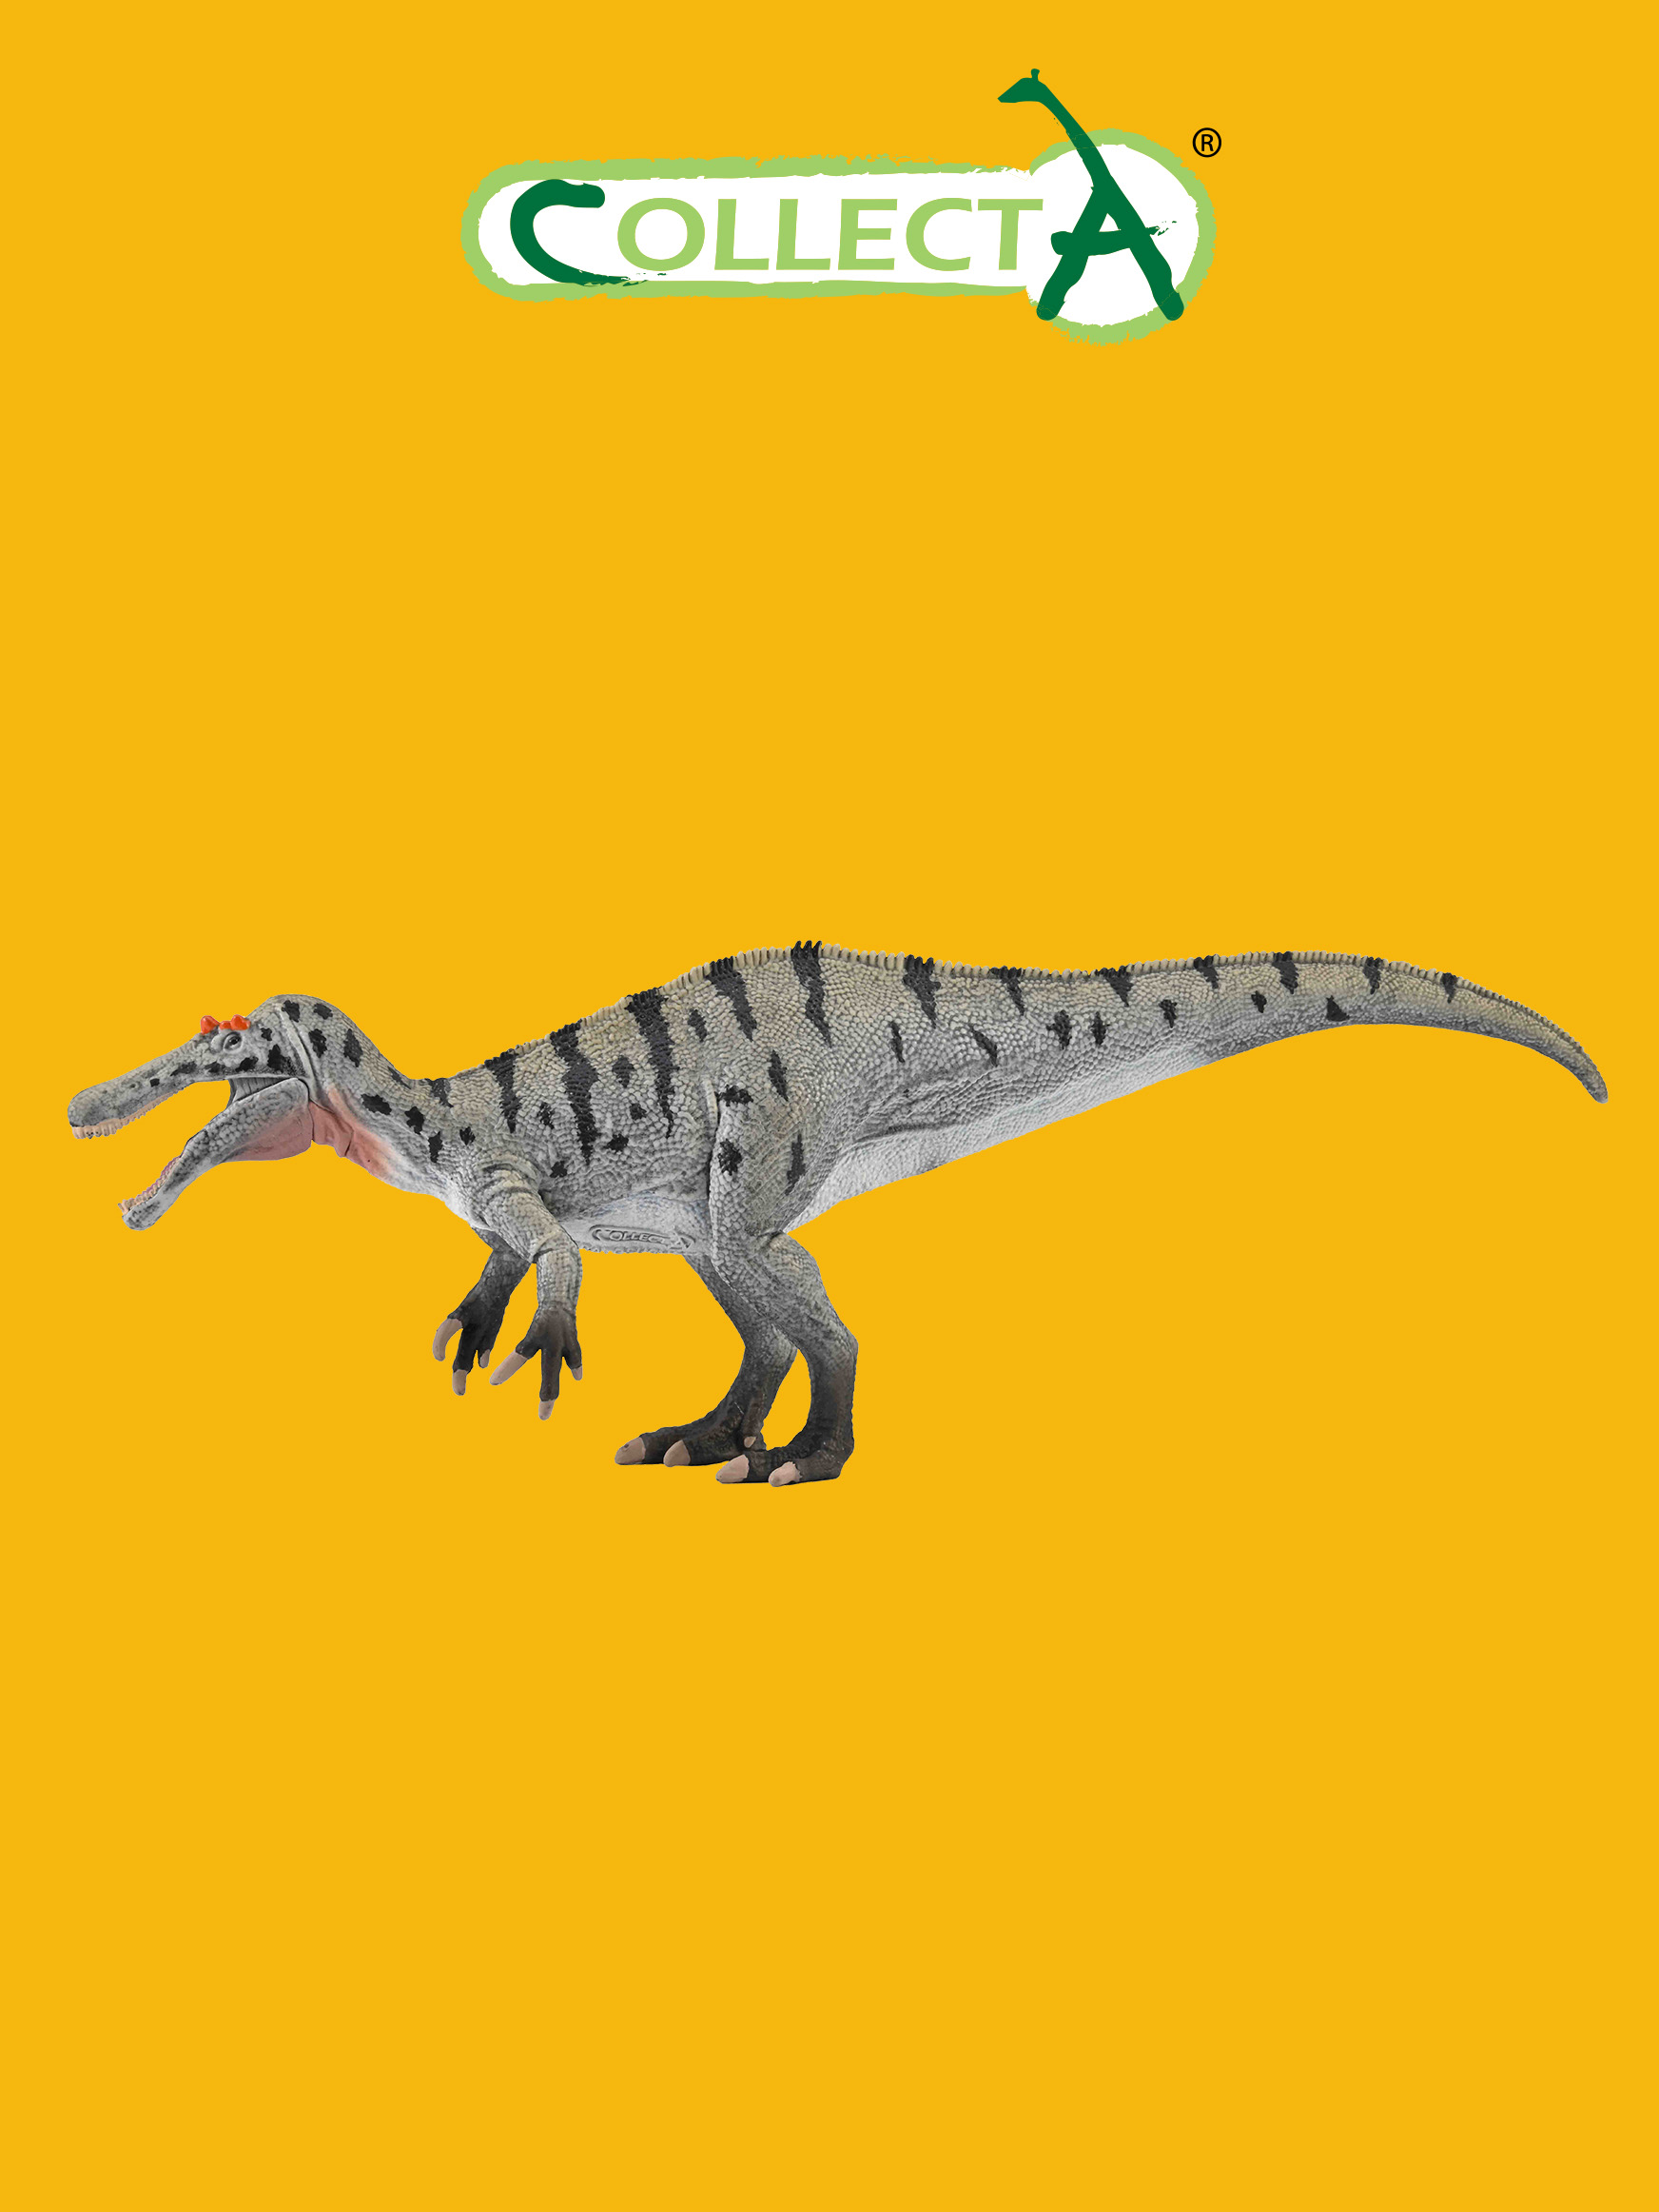 Фигурка Collecta динозавра Цератозухопсов подвижной челюстью фигурка динозавра детёныш трицератопса